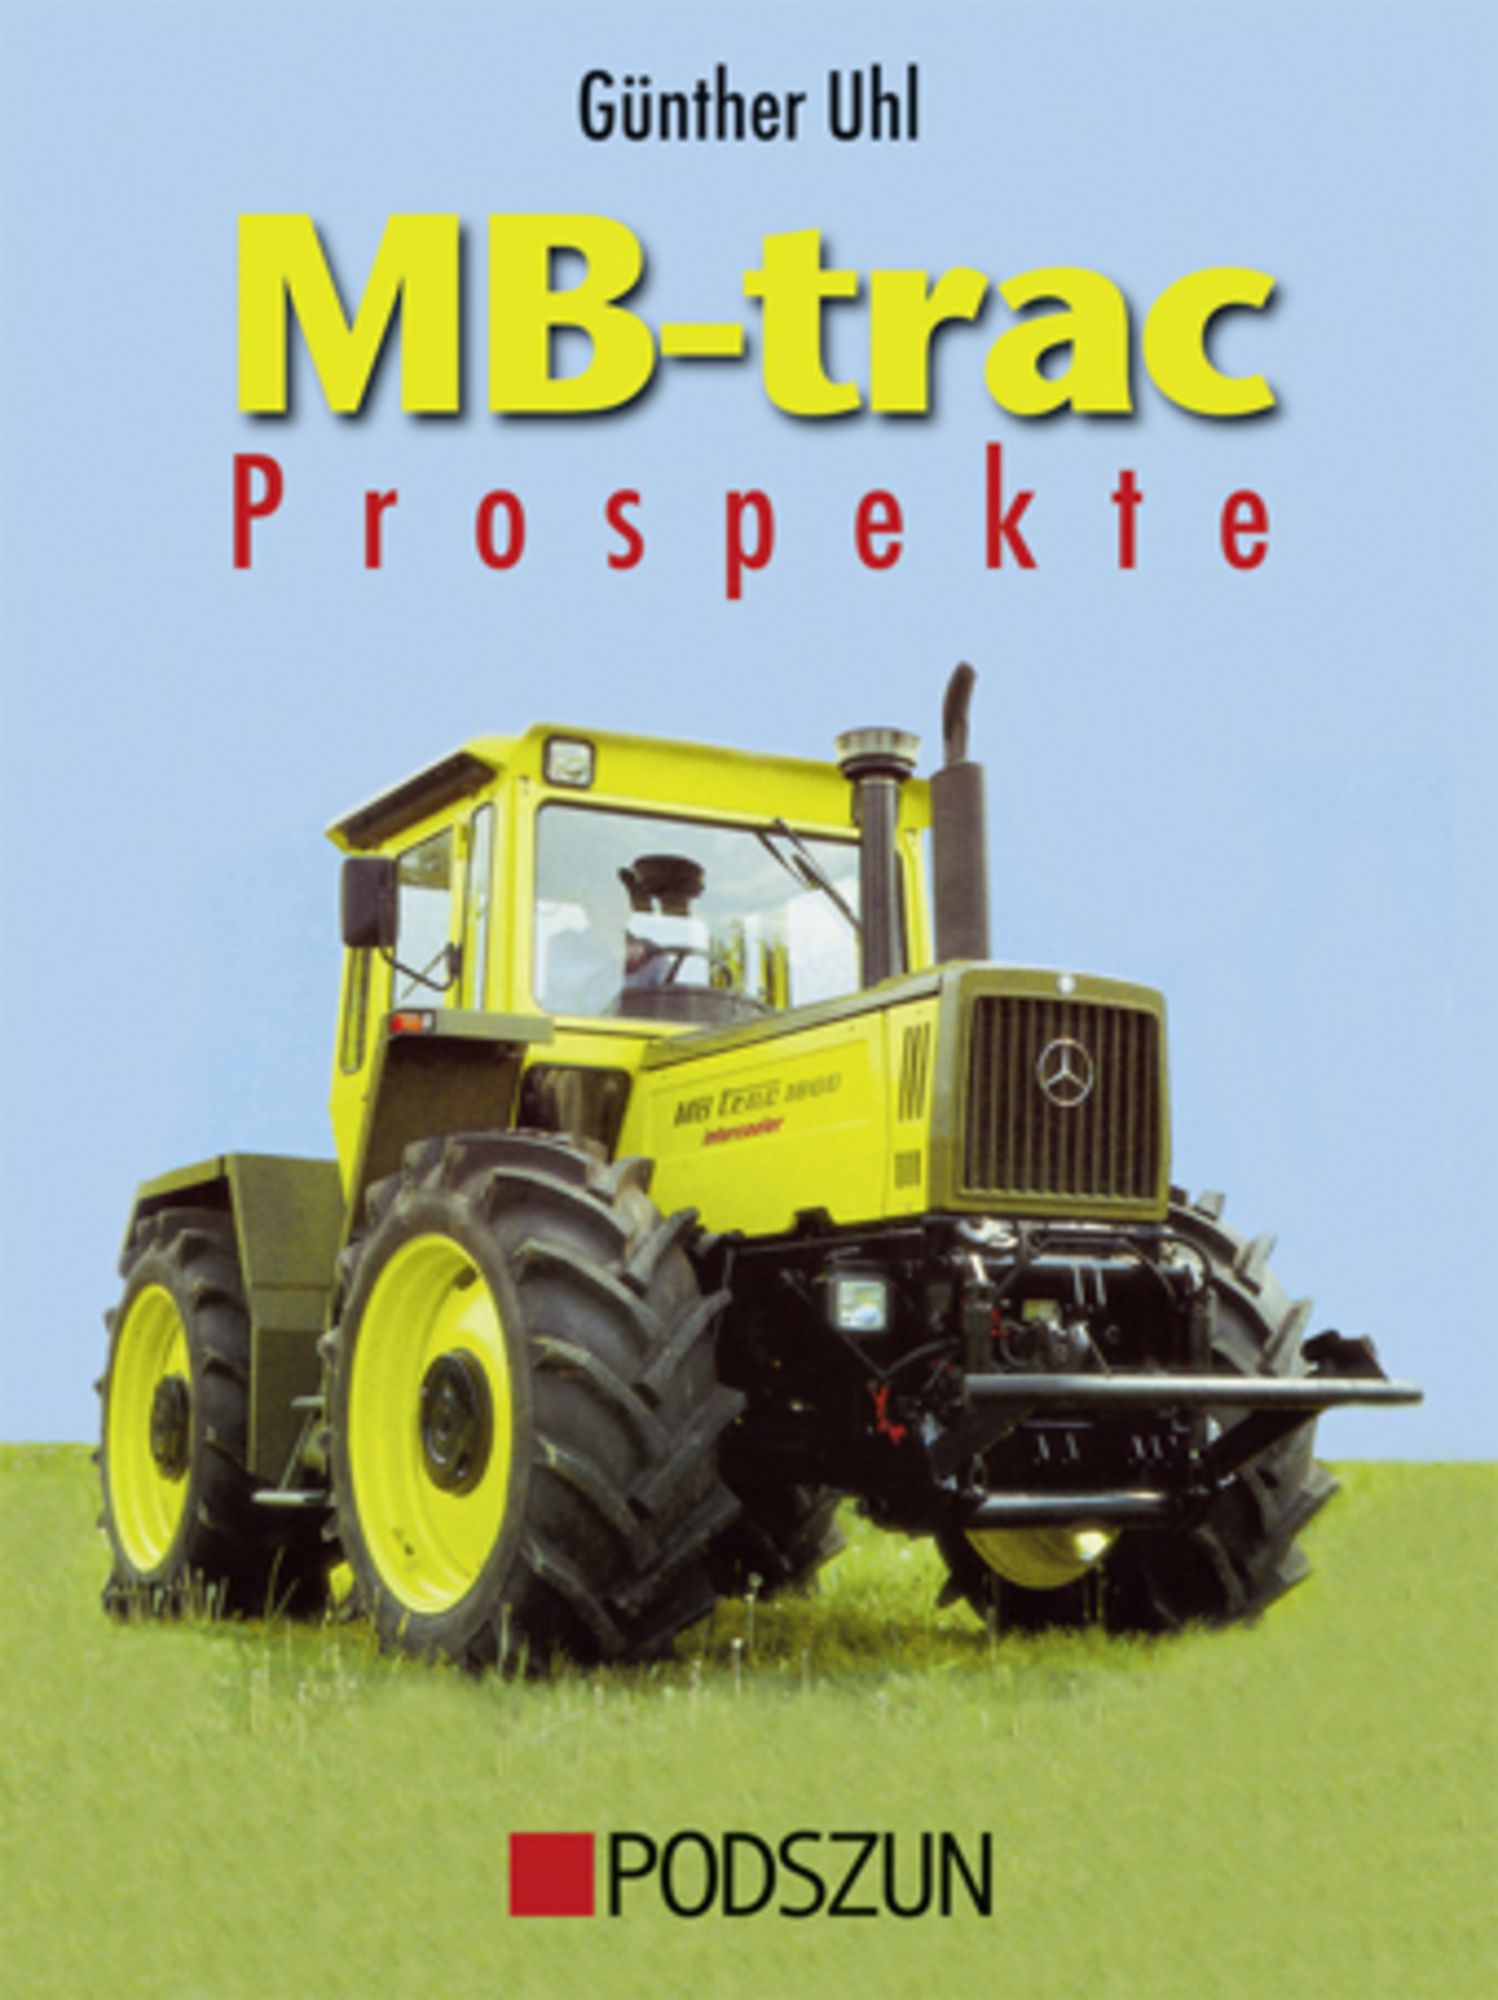 MB-trac Prospekte' von 'Günther Uhl' - Buch - '978-3-86133-563-4